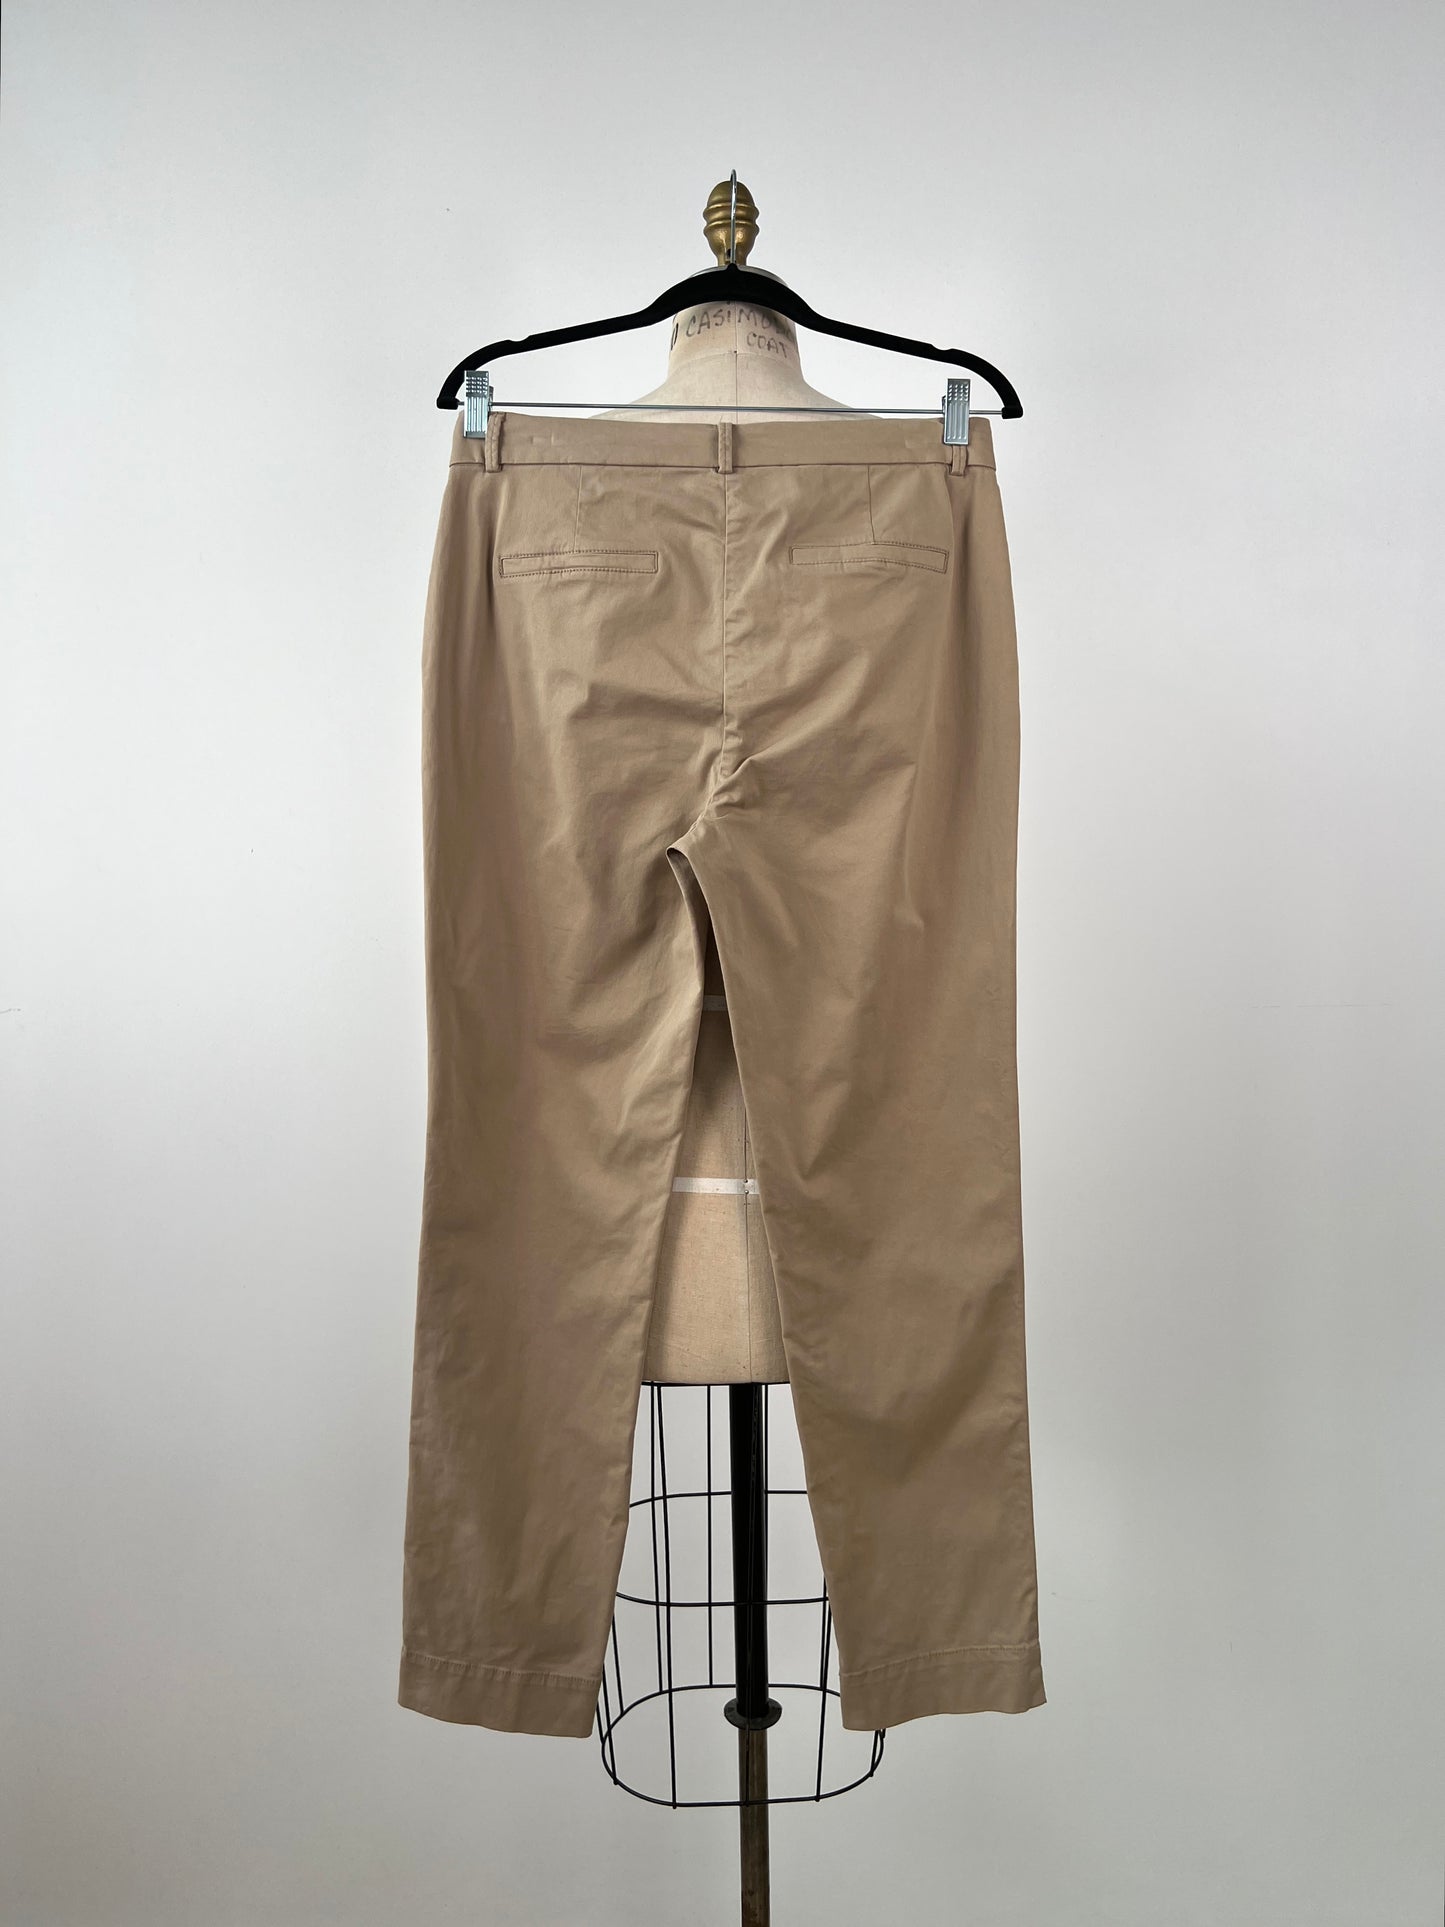 Pantalon beige indémodable en coton extensible (6/8)